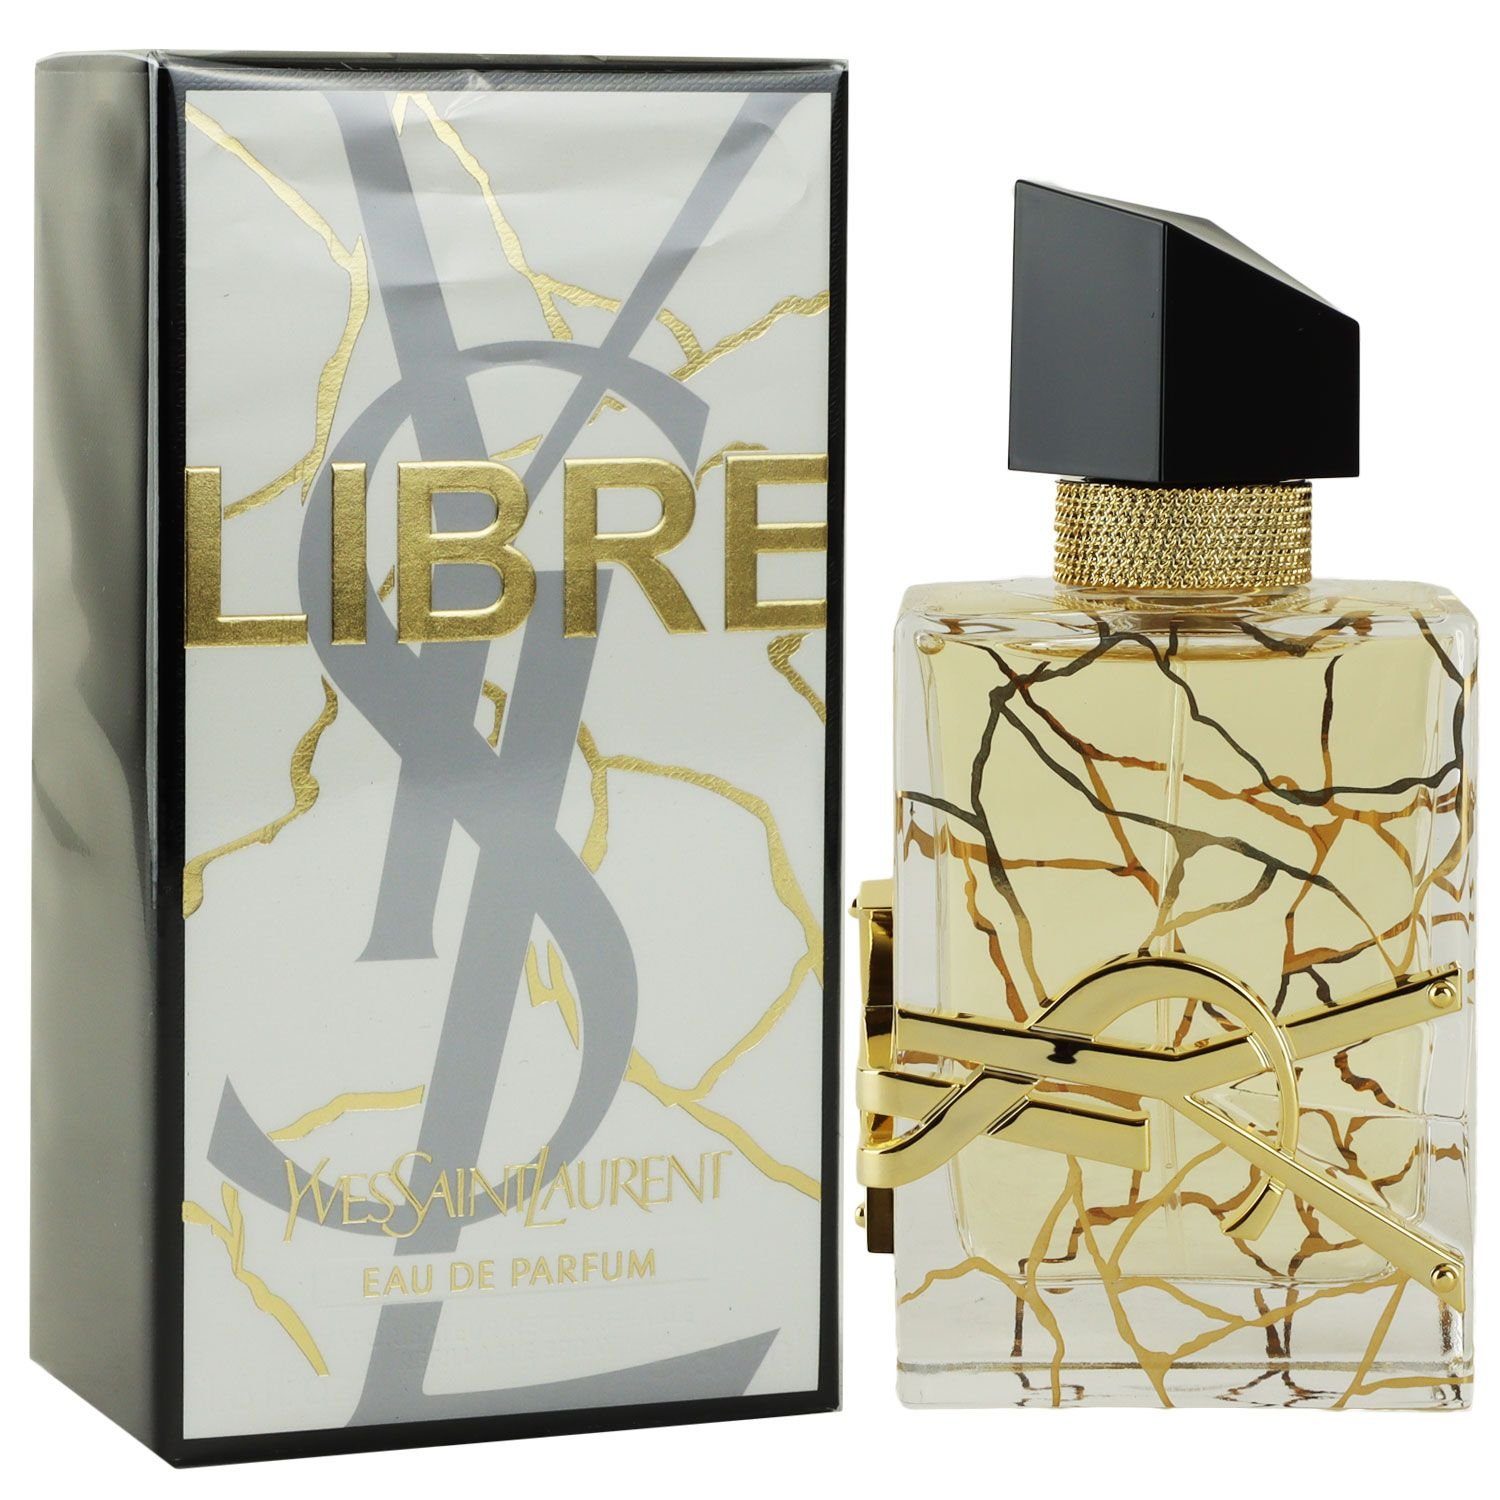 YVES SAINT LAURENT Eau de Saint ml Libre 50 Eau Yves Laurent Parfum de YSL EDP Edition Parfum Limited